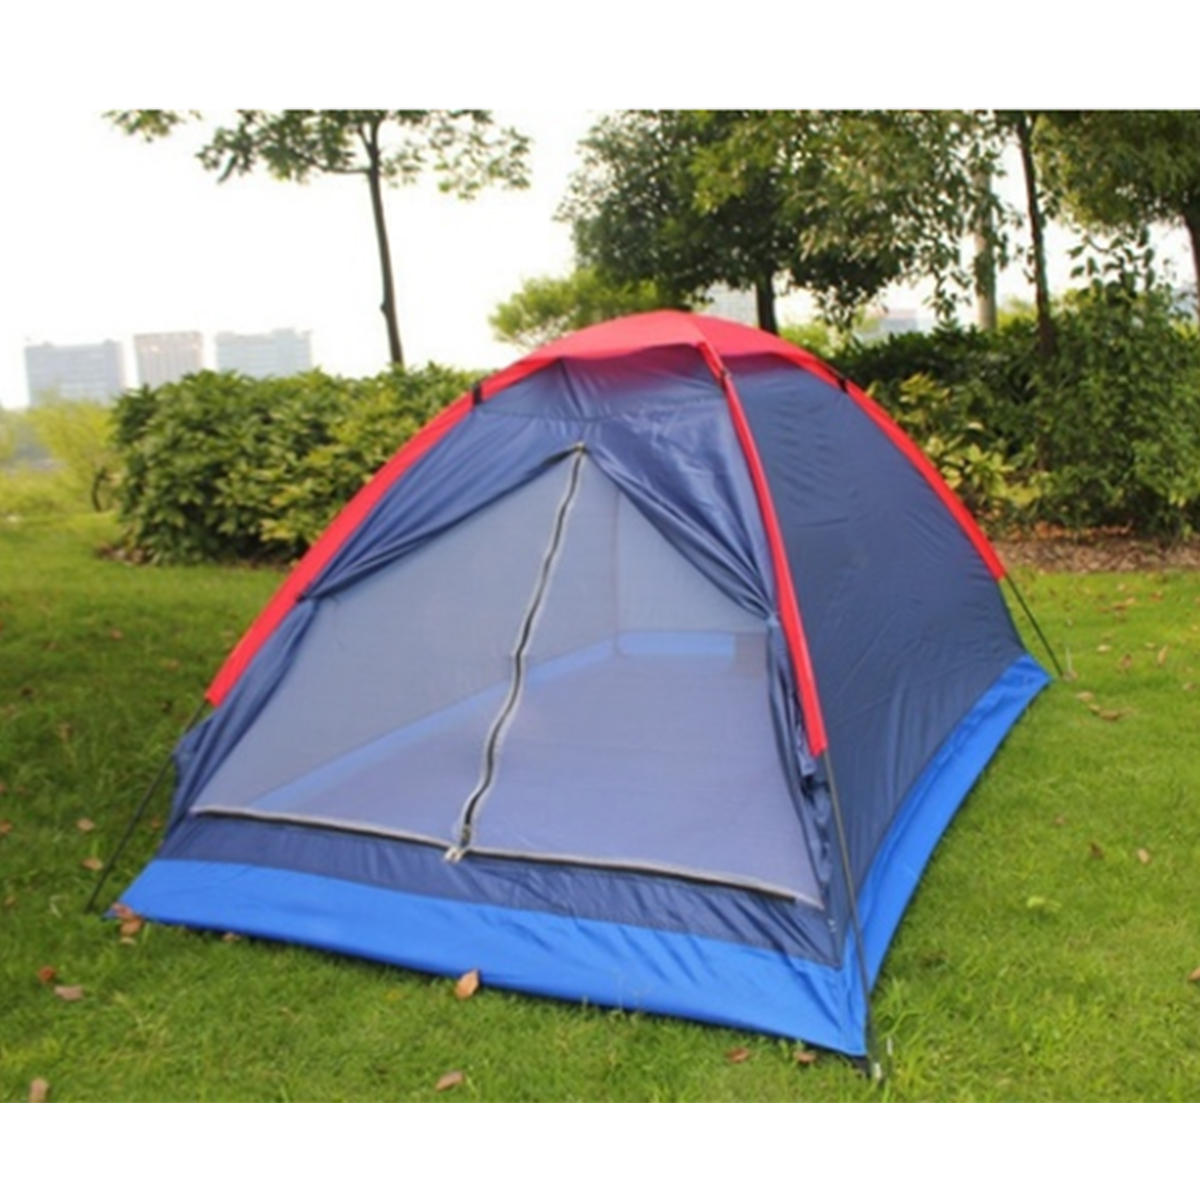 Barraca de camping para 2 pessoas, de uma camada, para praia, ao ar livre, resistente ao vento e à água, tenda de verão com saco de cor aleatória.